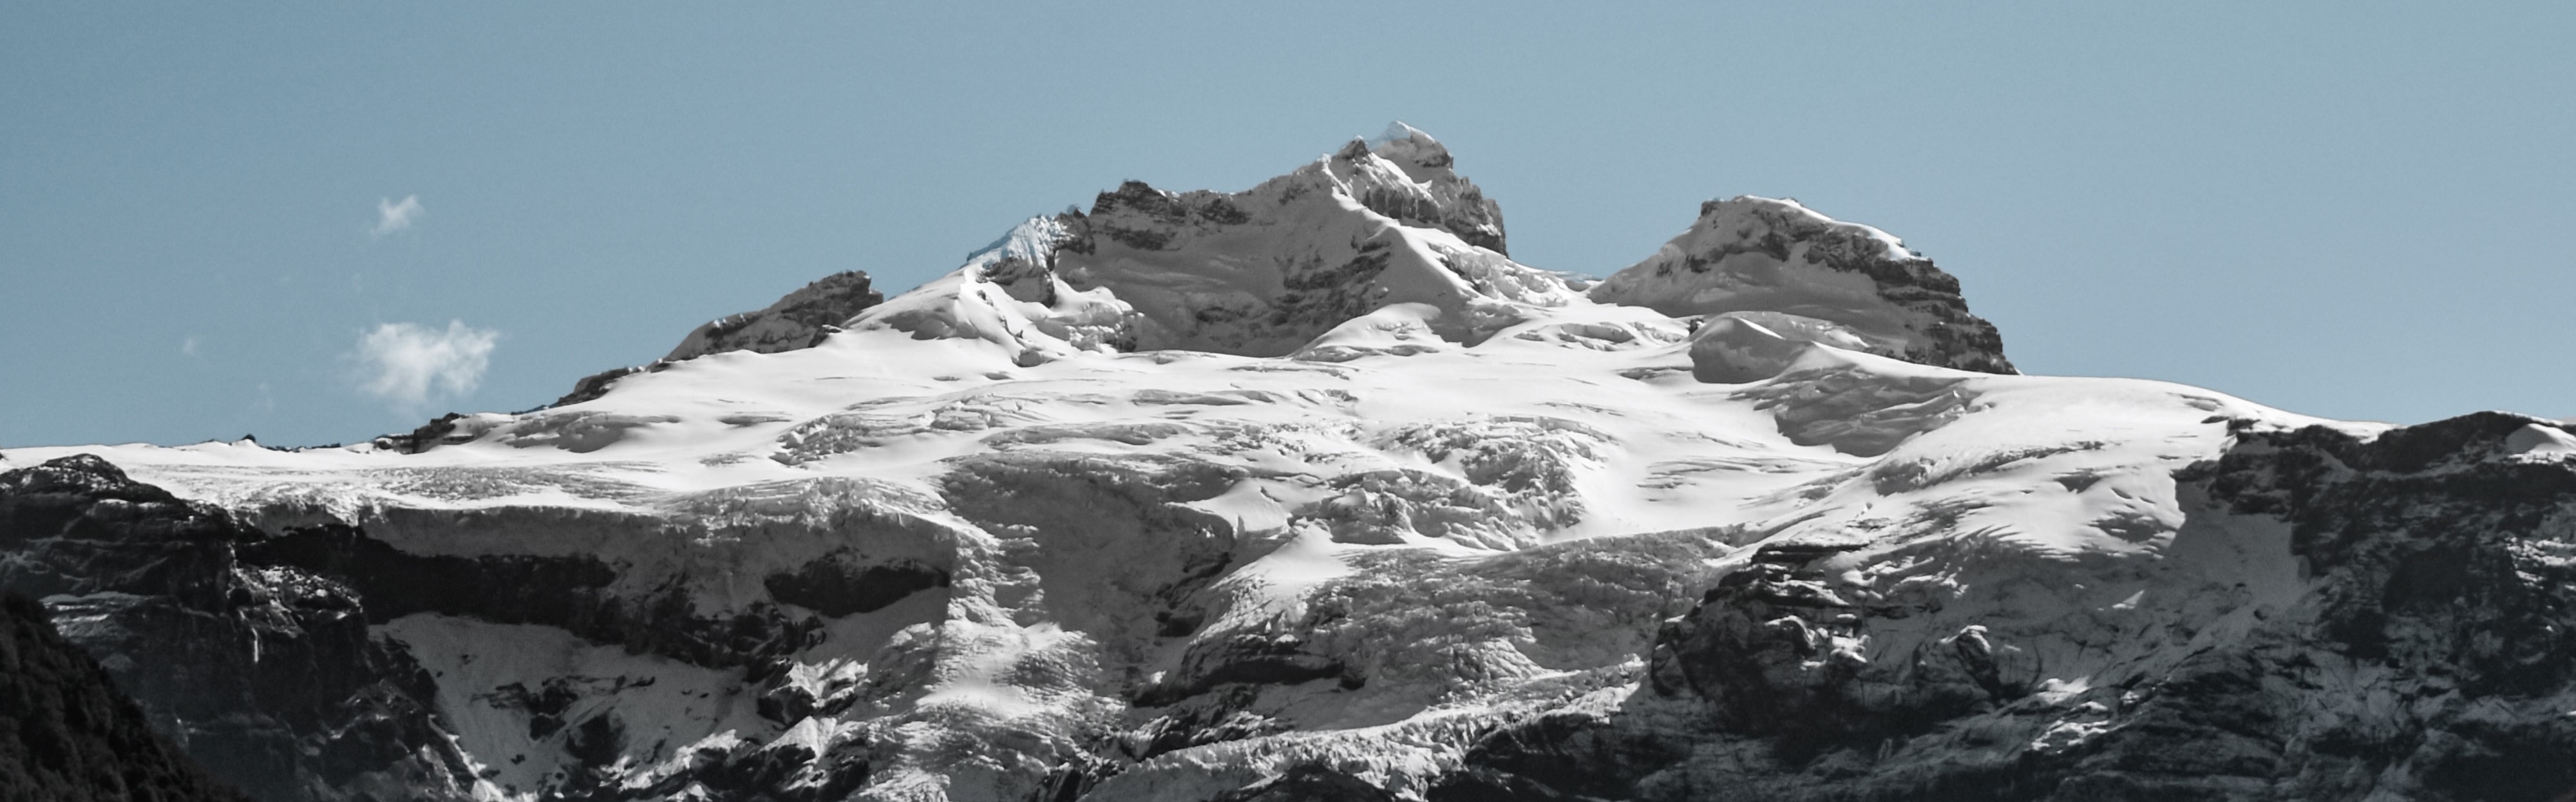 Cerro Tronador, em Bariloche

passeios em Bariloche